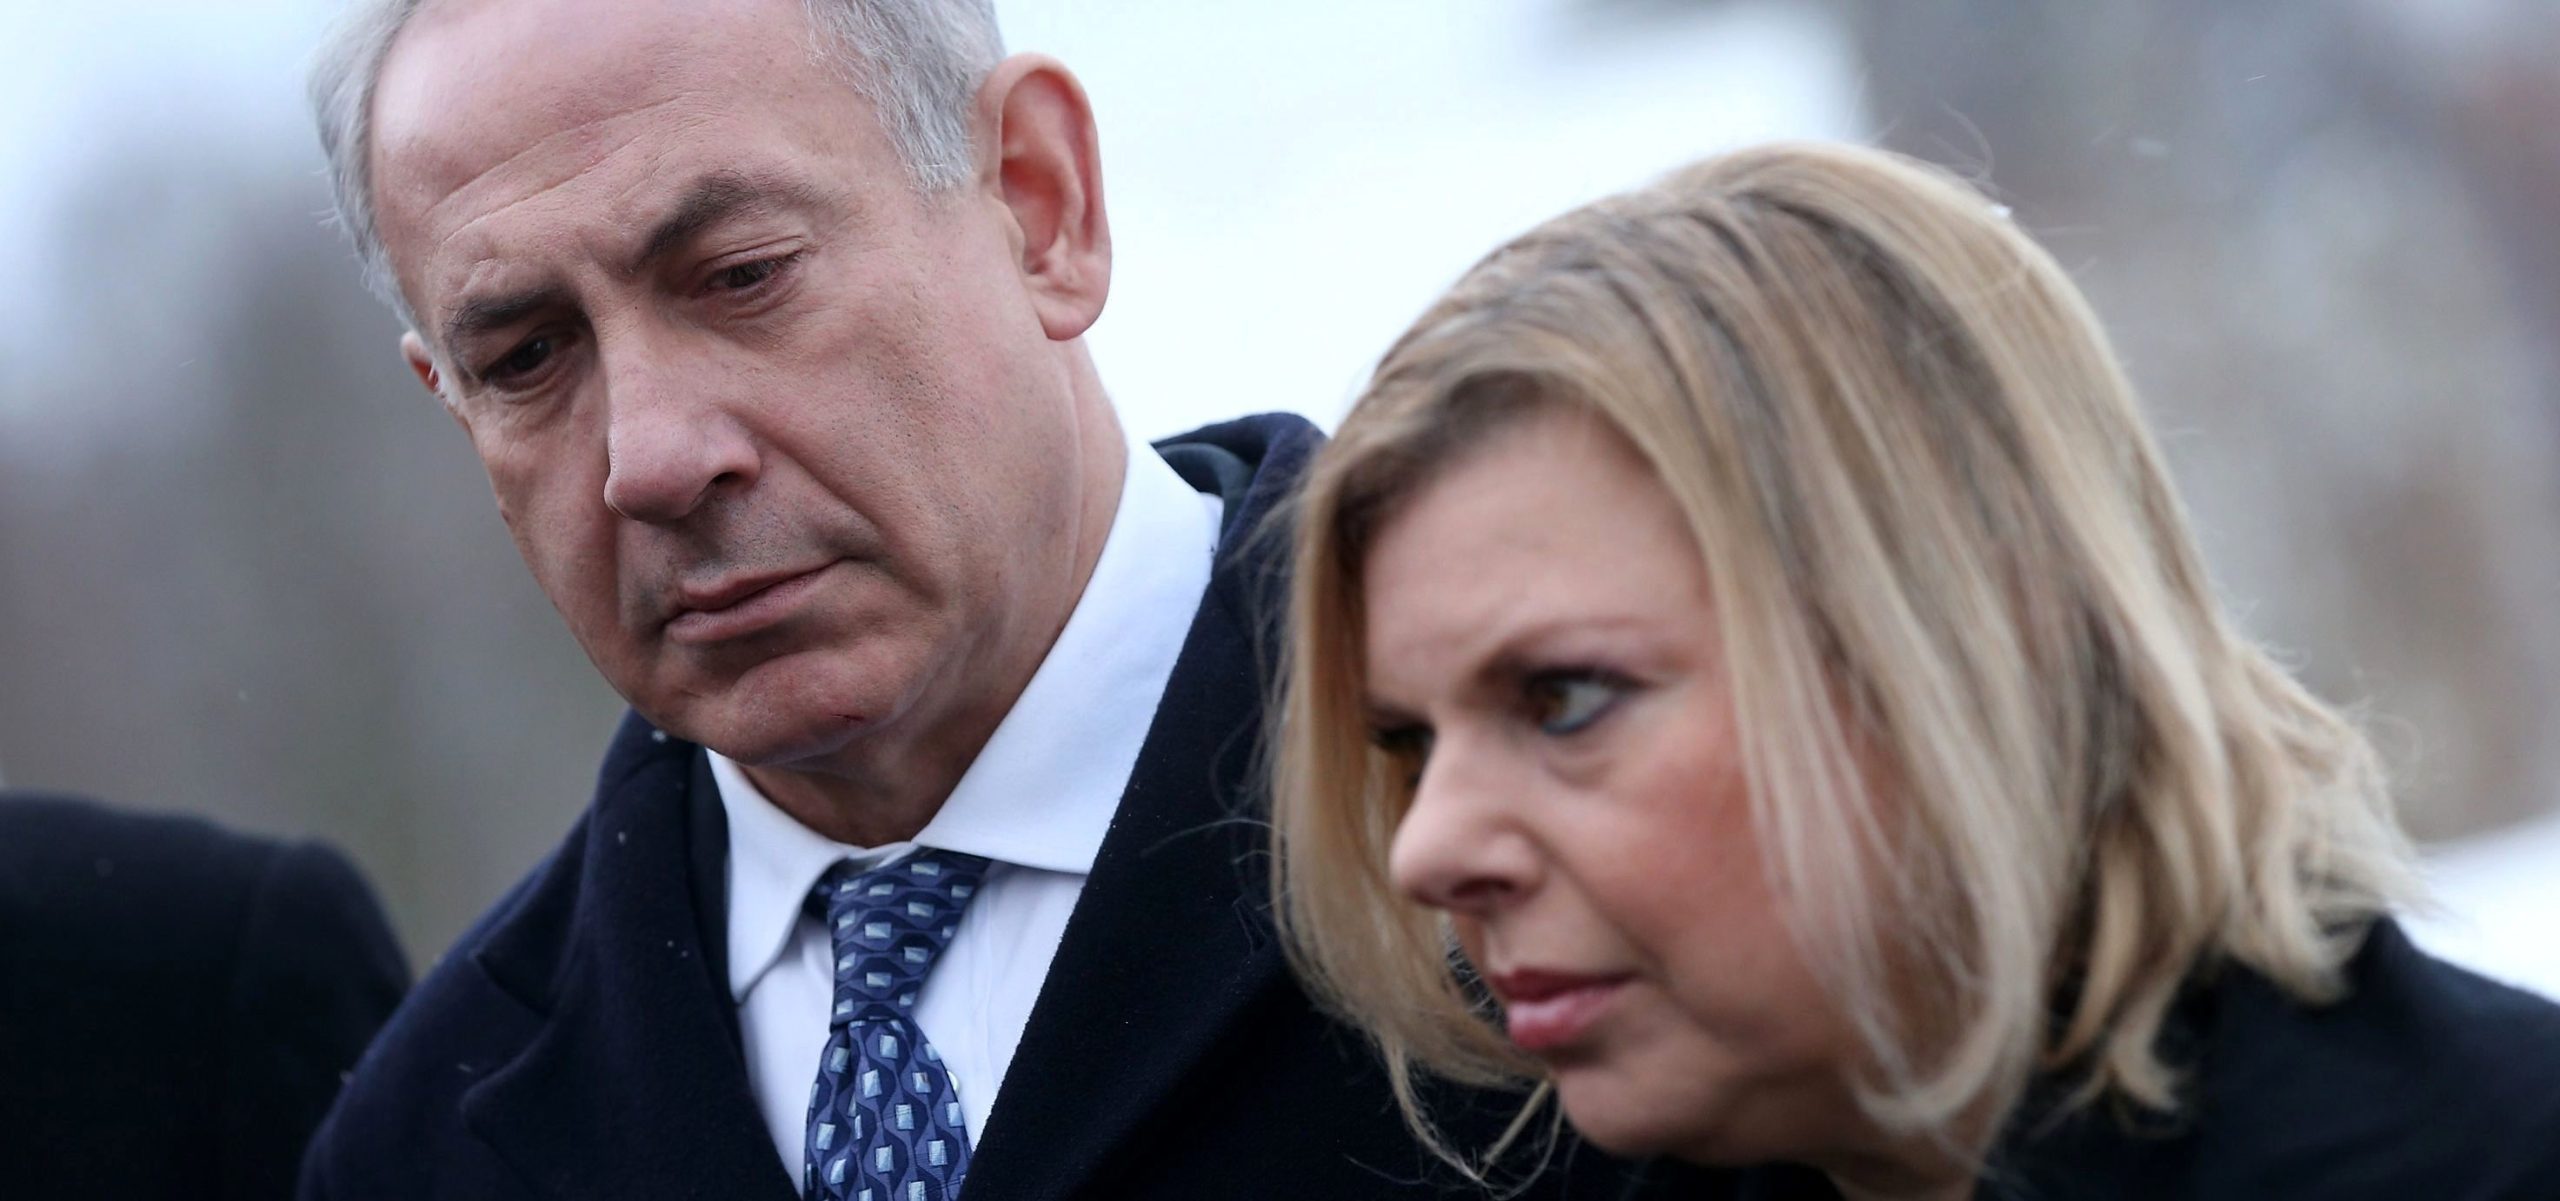 هک تلفن همراه همسر و فرزند نتانیاهو توسط ایران / نتانیاهو از خانه شنود می شده است